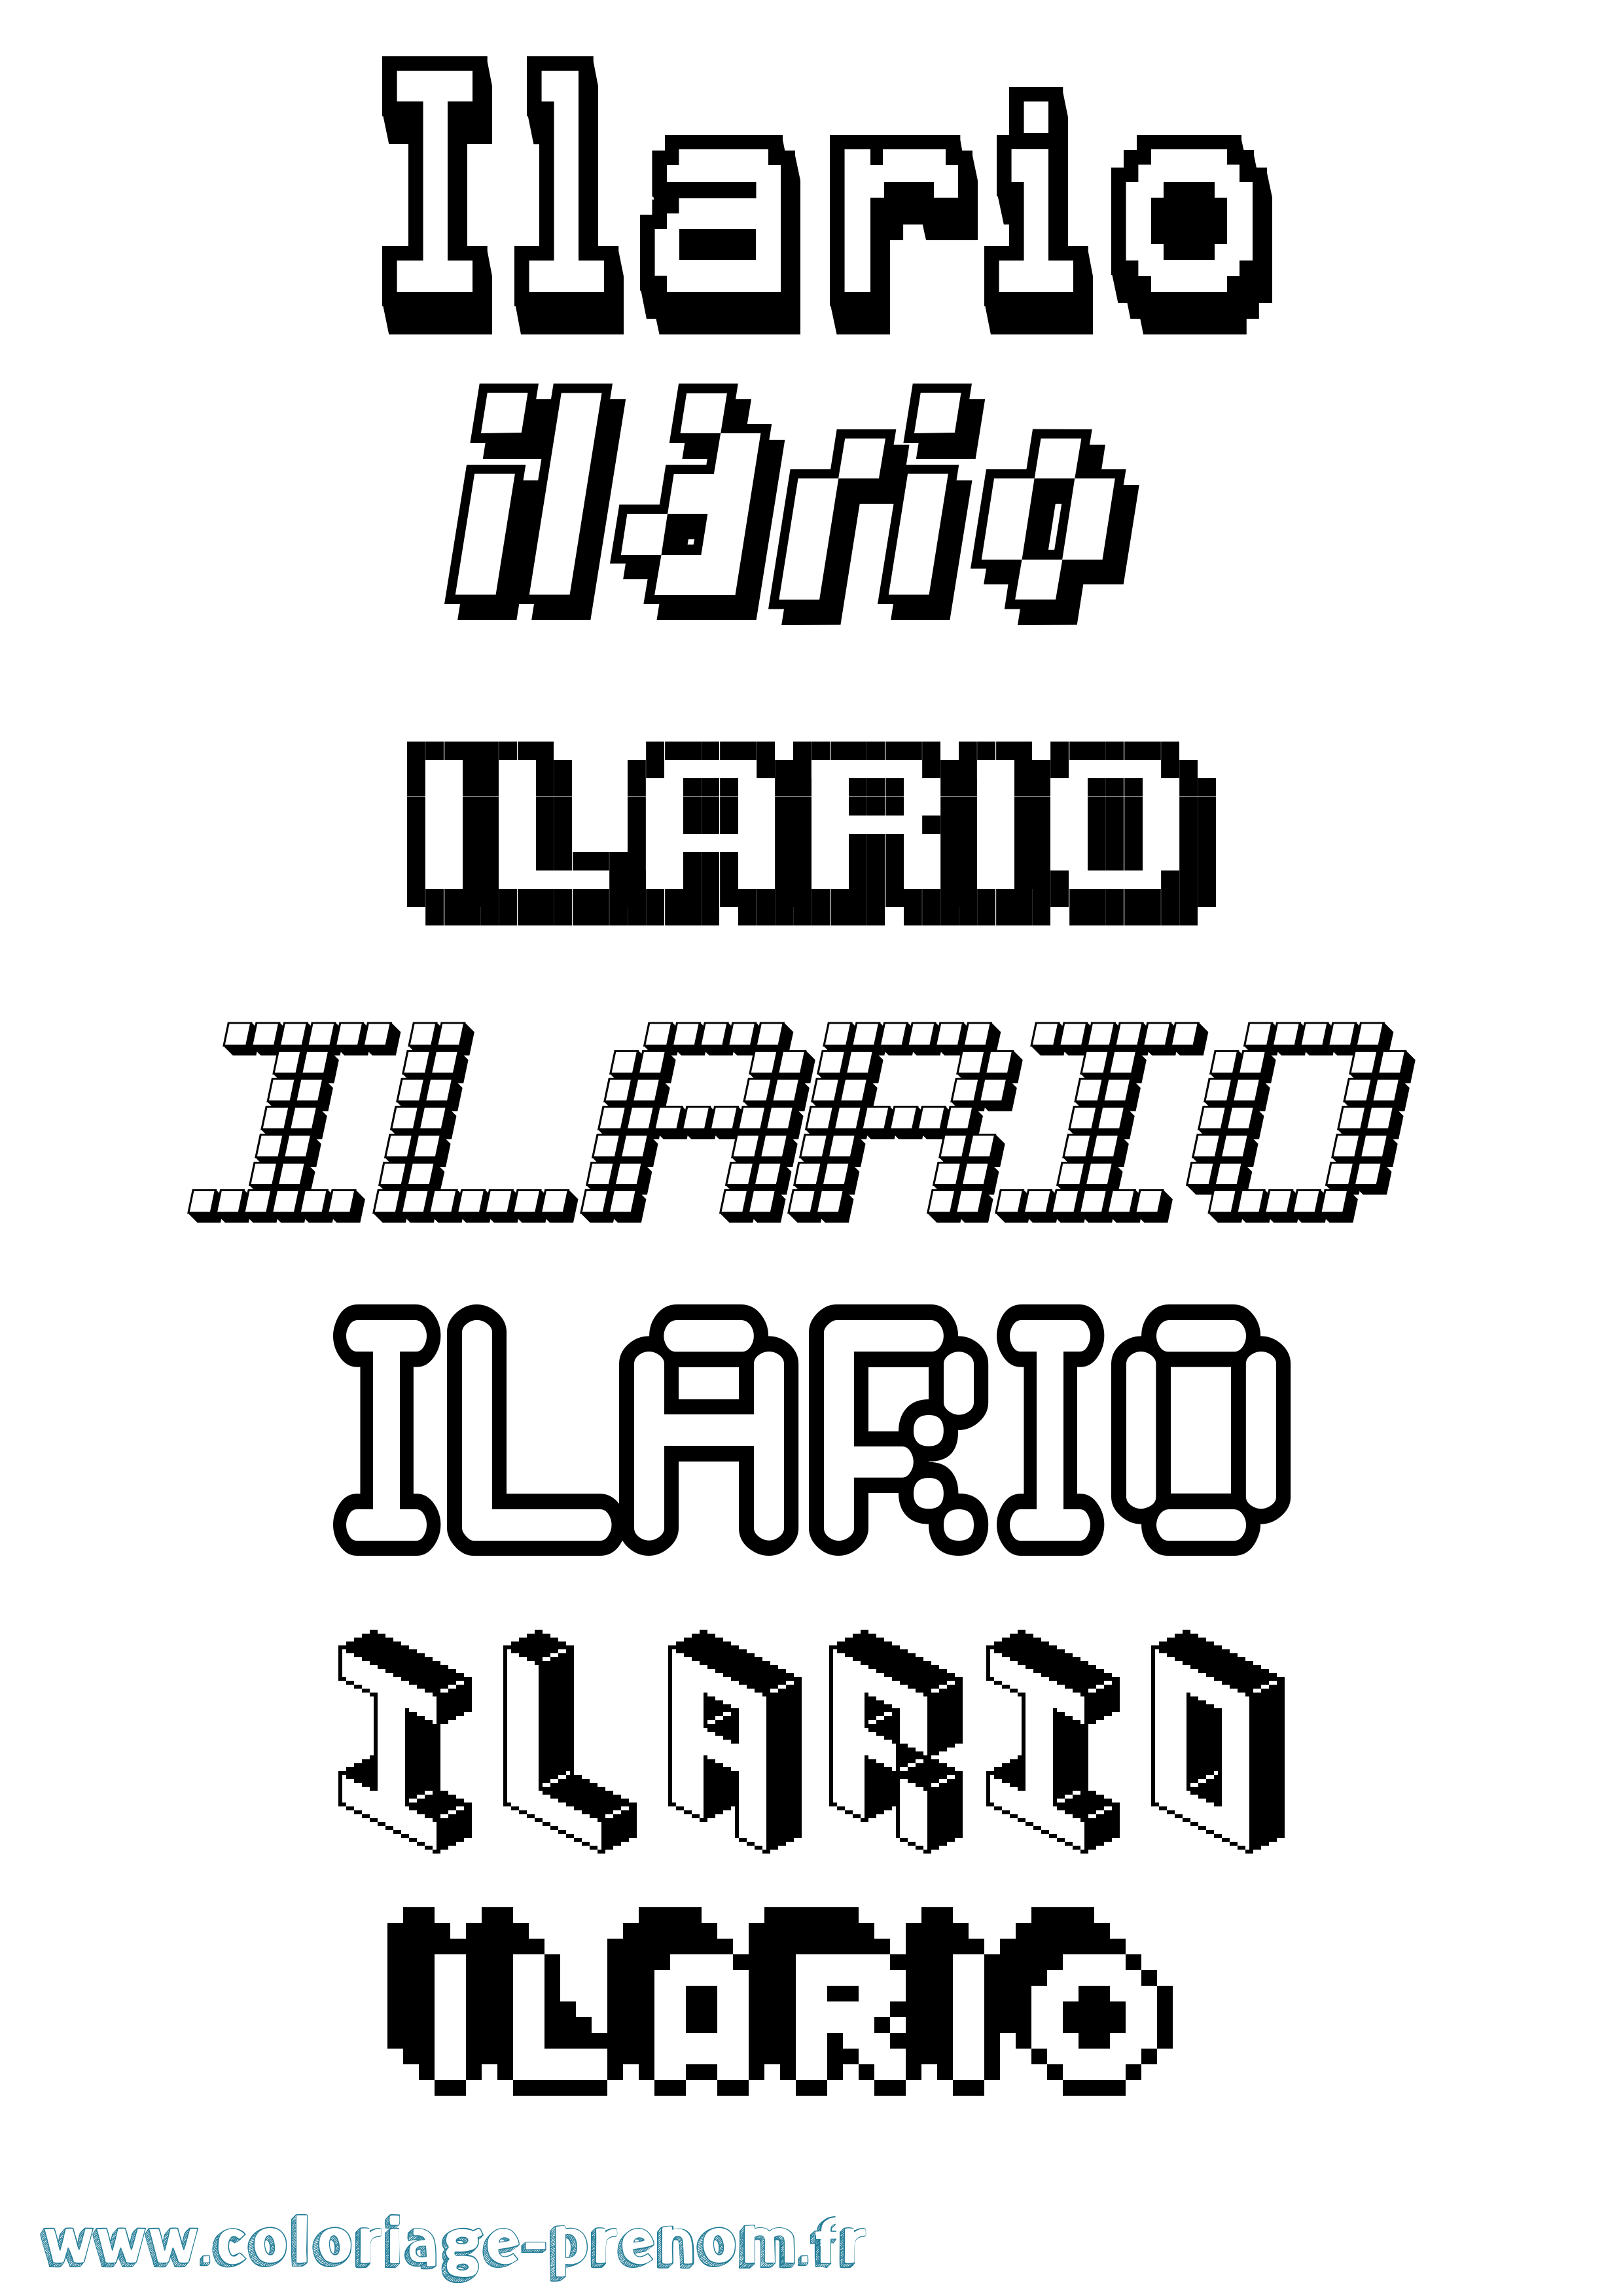 Coloriage prénom Ilario Pixel